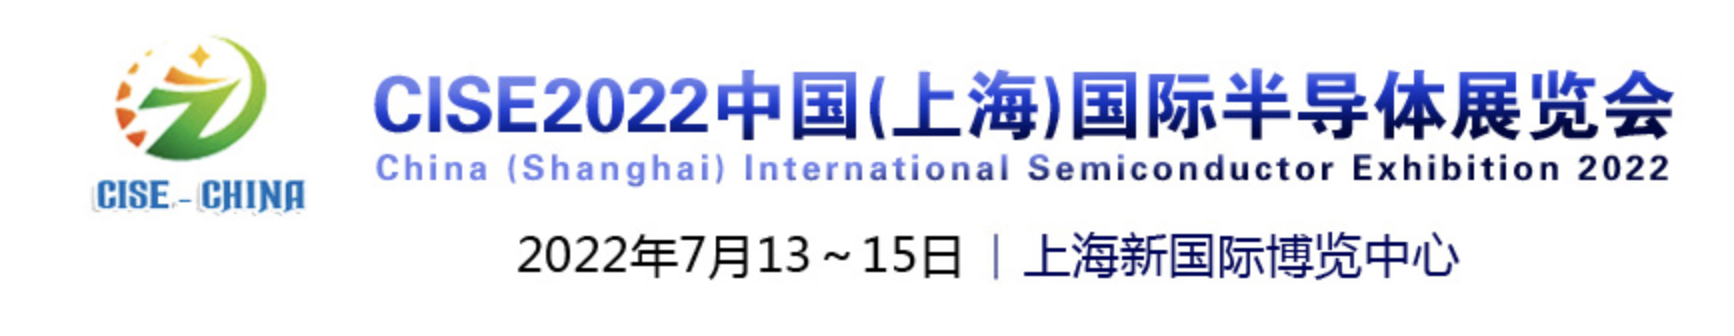 上海国际半导体展览会 Semiconchina